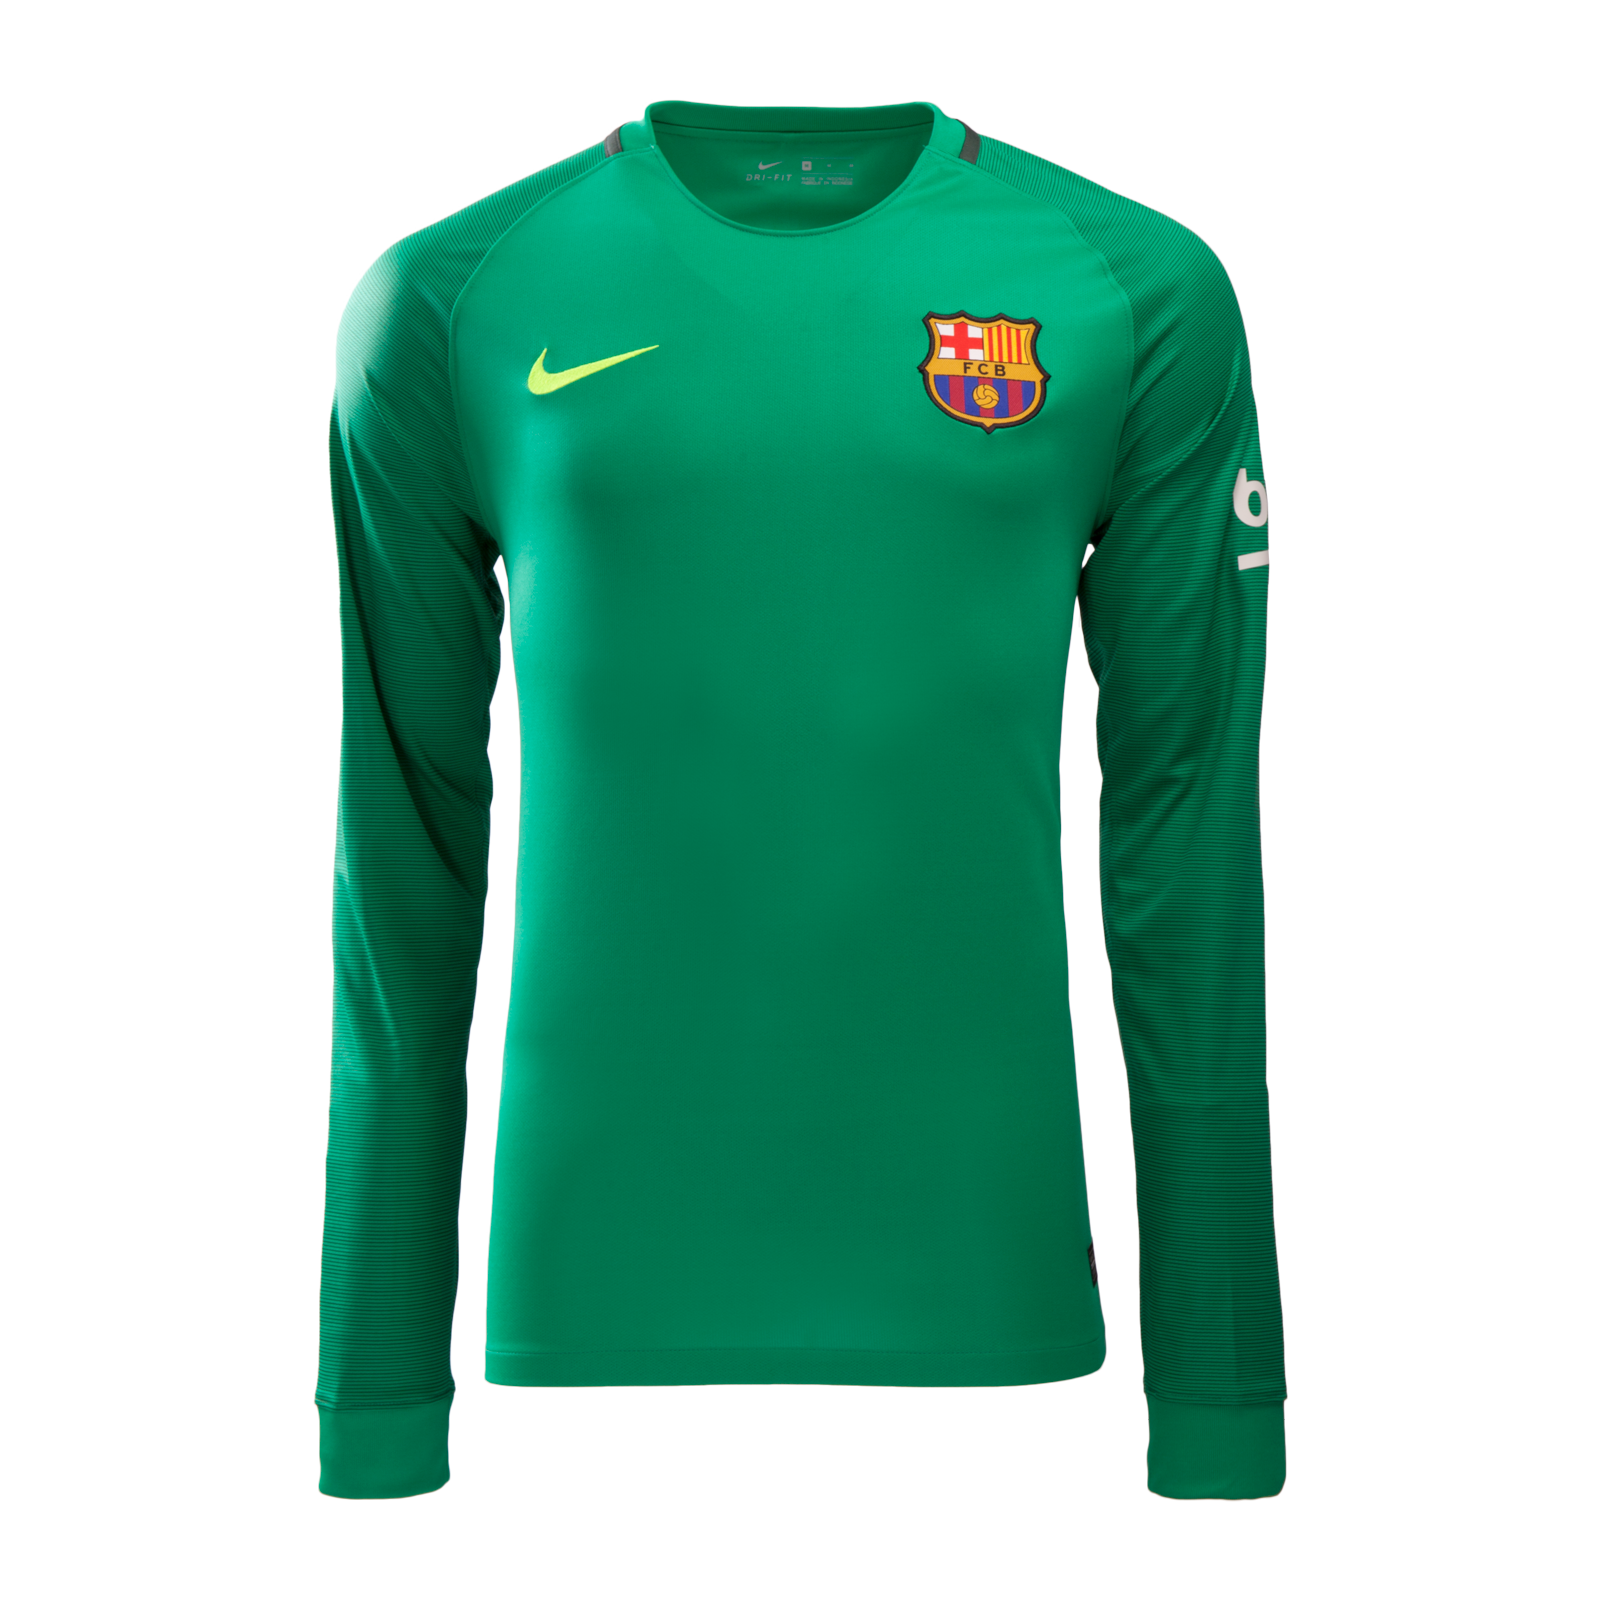 Barcelona LS Goalkeeper 2016-17 Green Jersey Shirt